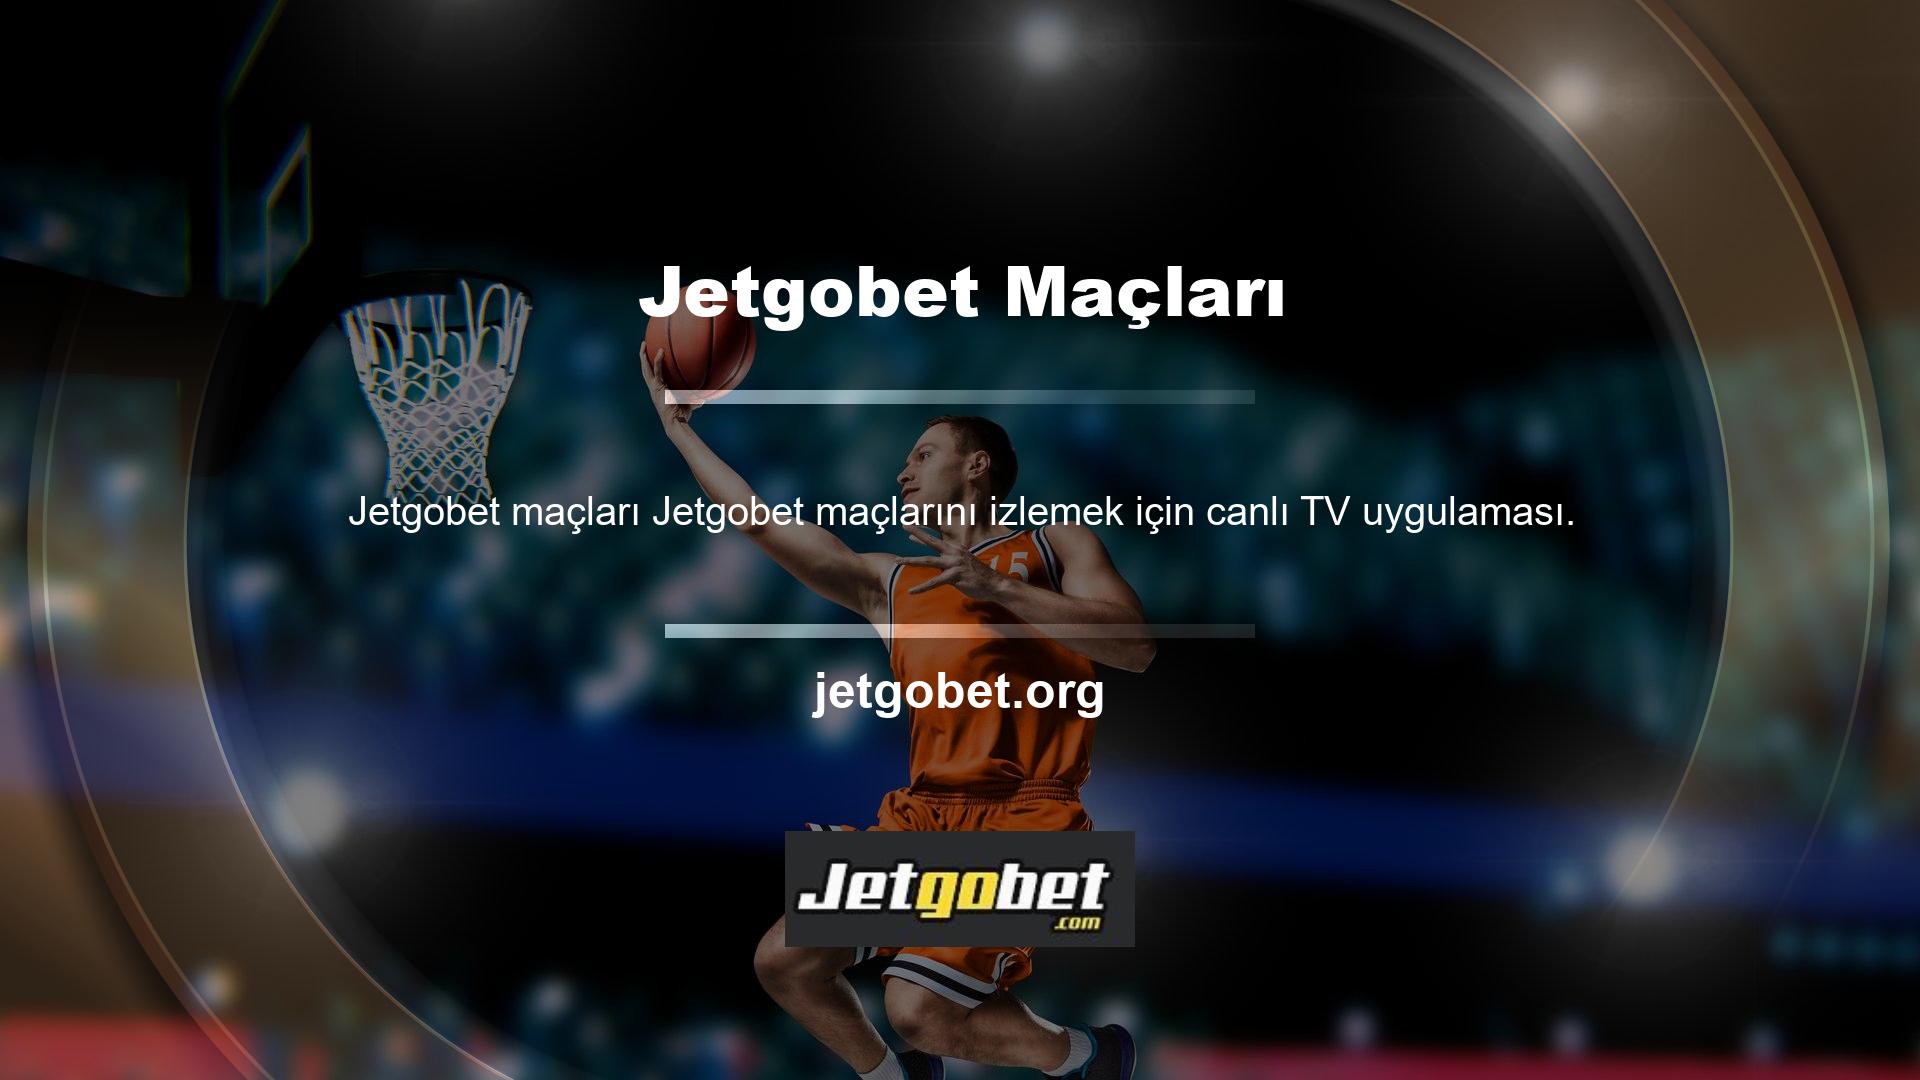 Jetgobet Live TV uygulamasıyla kesintisiz oyun